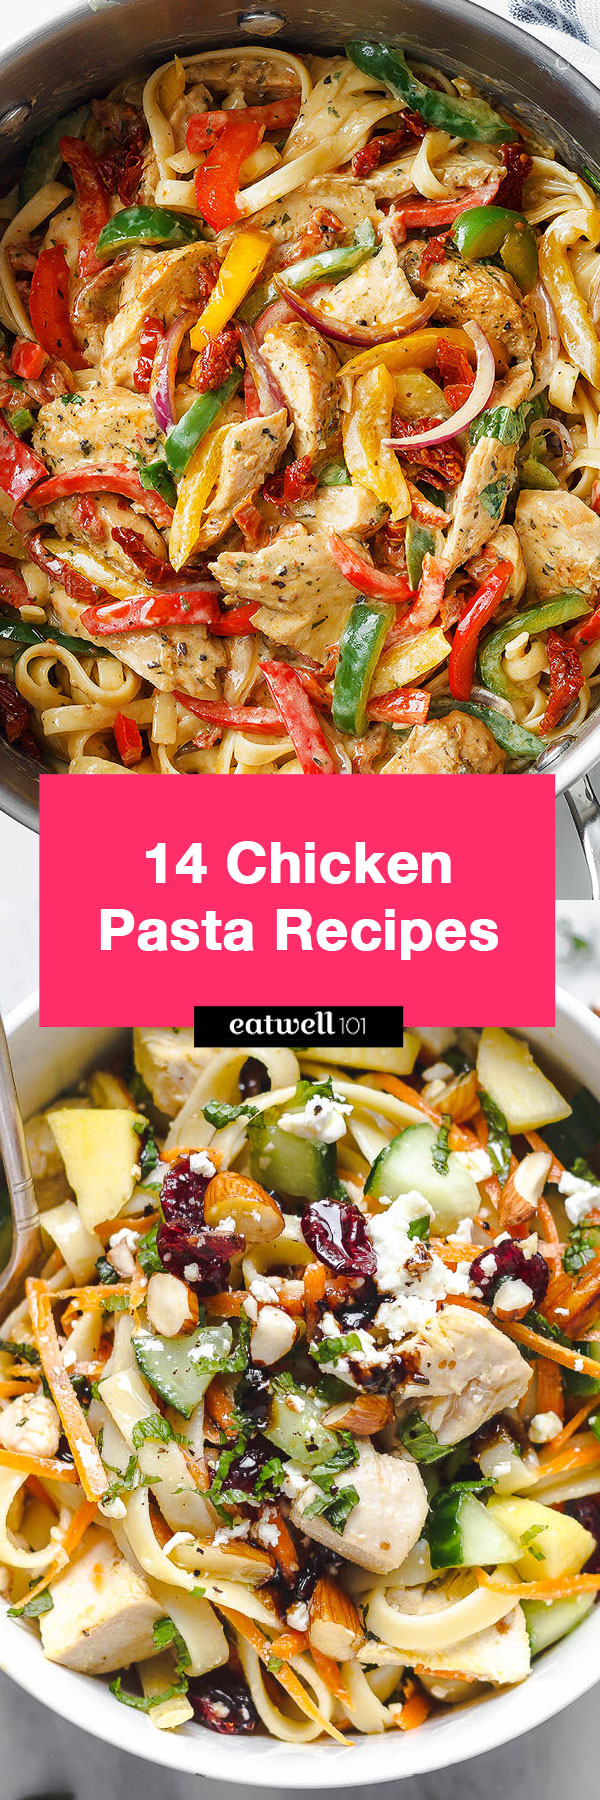 Chicken Pasta Recipes: 14 Chicken Pasta Recipe Ideas for Dinner